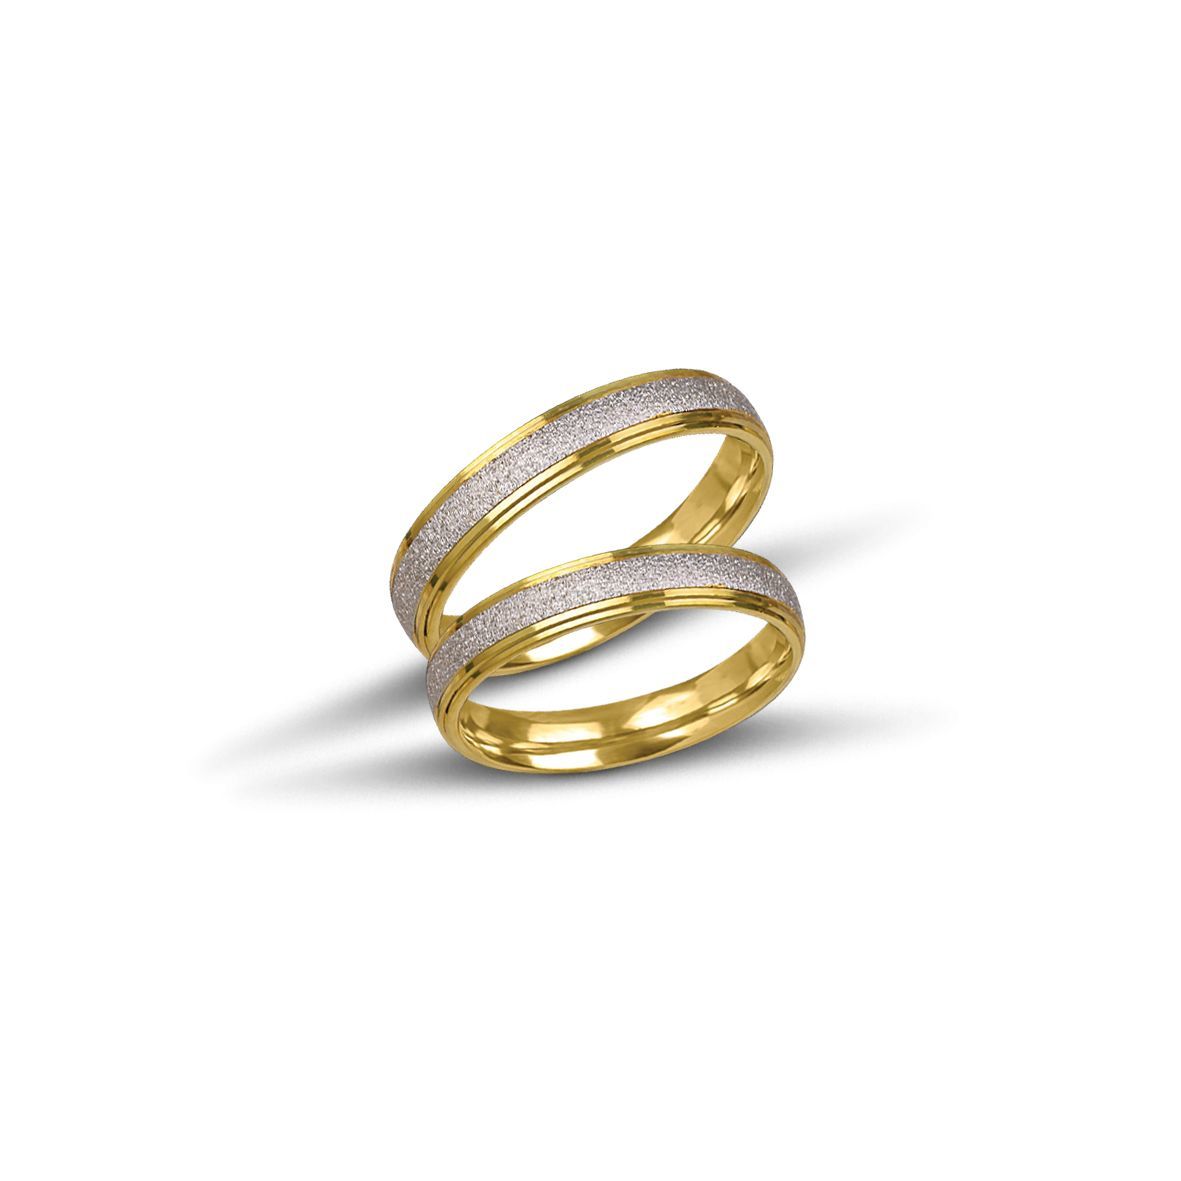 White gold wedding rings 4mm (code VK1011/40)